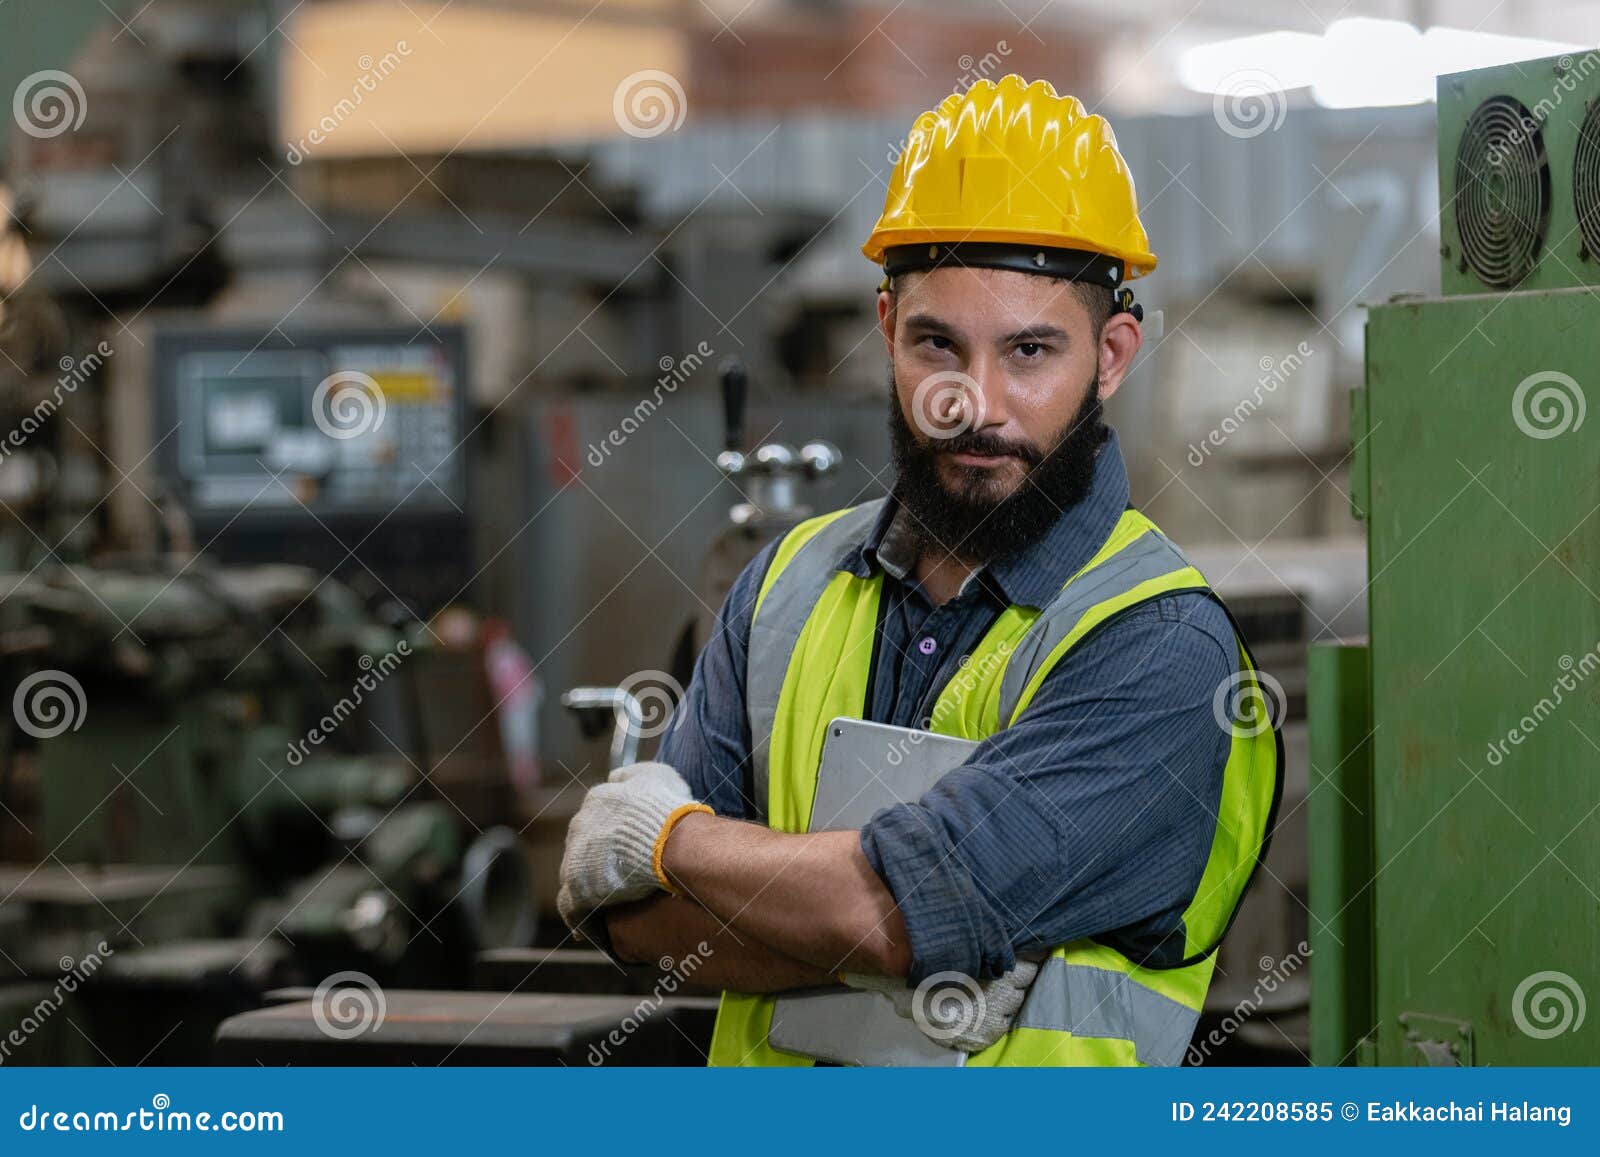 Un hombre con barba, casco y ropa de trabajo. retrato de un